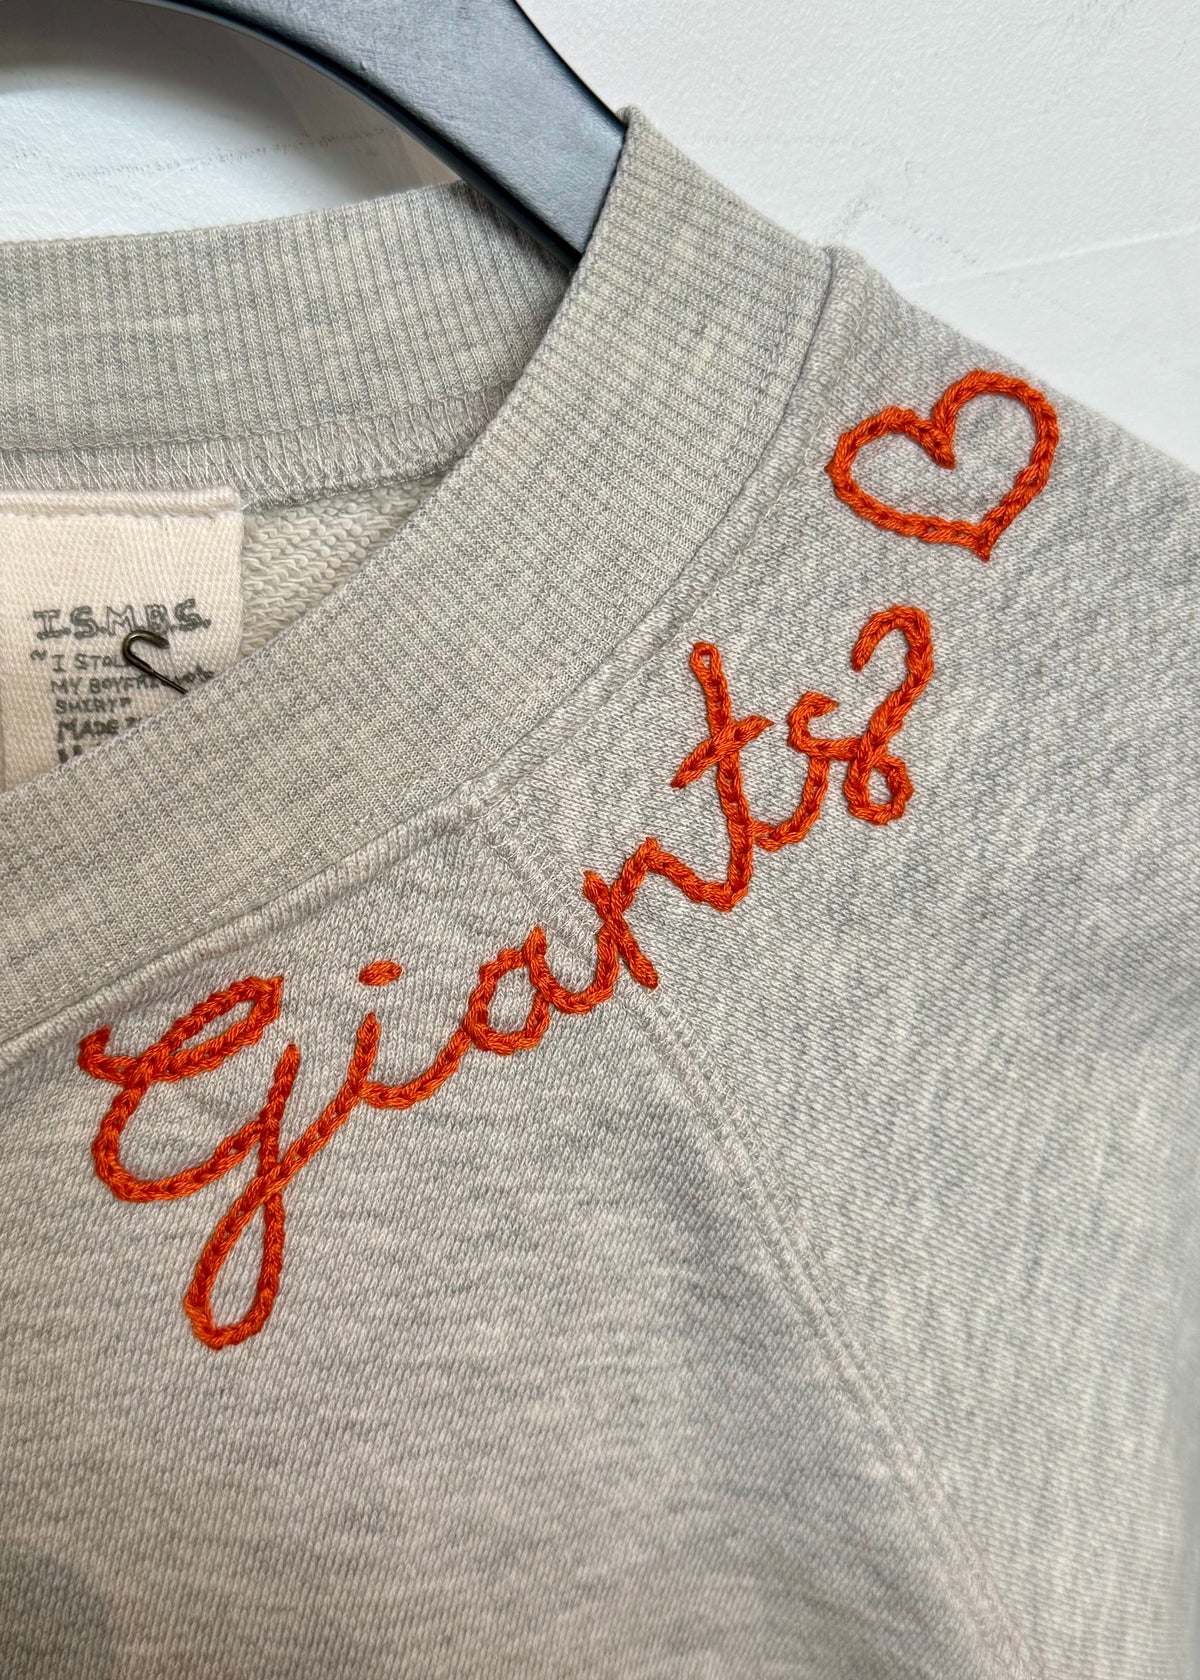 Giants Sweatshirt - JoeyRae